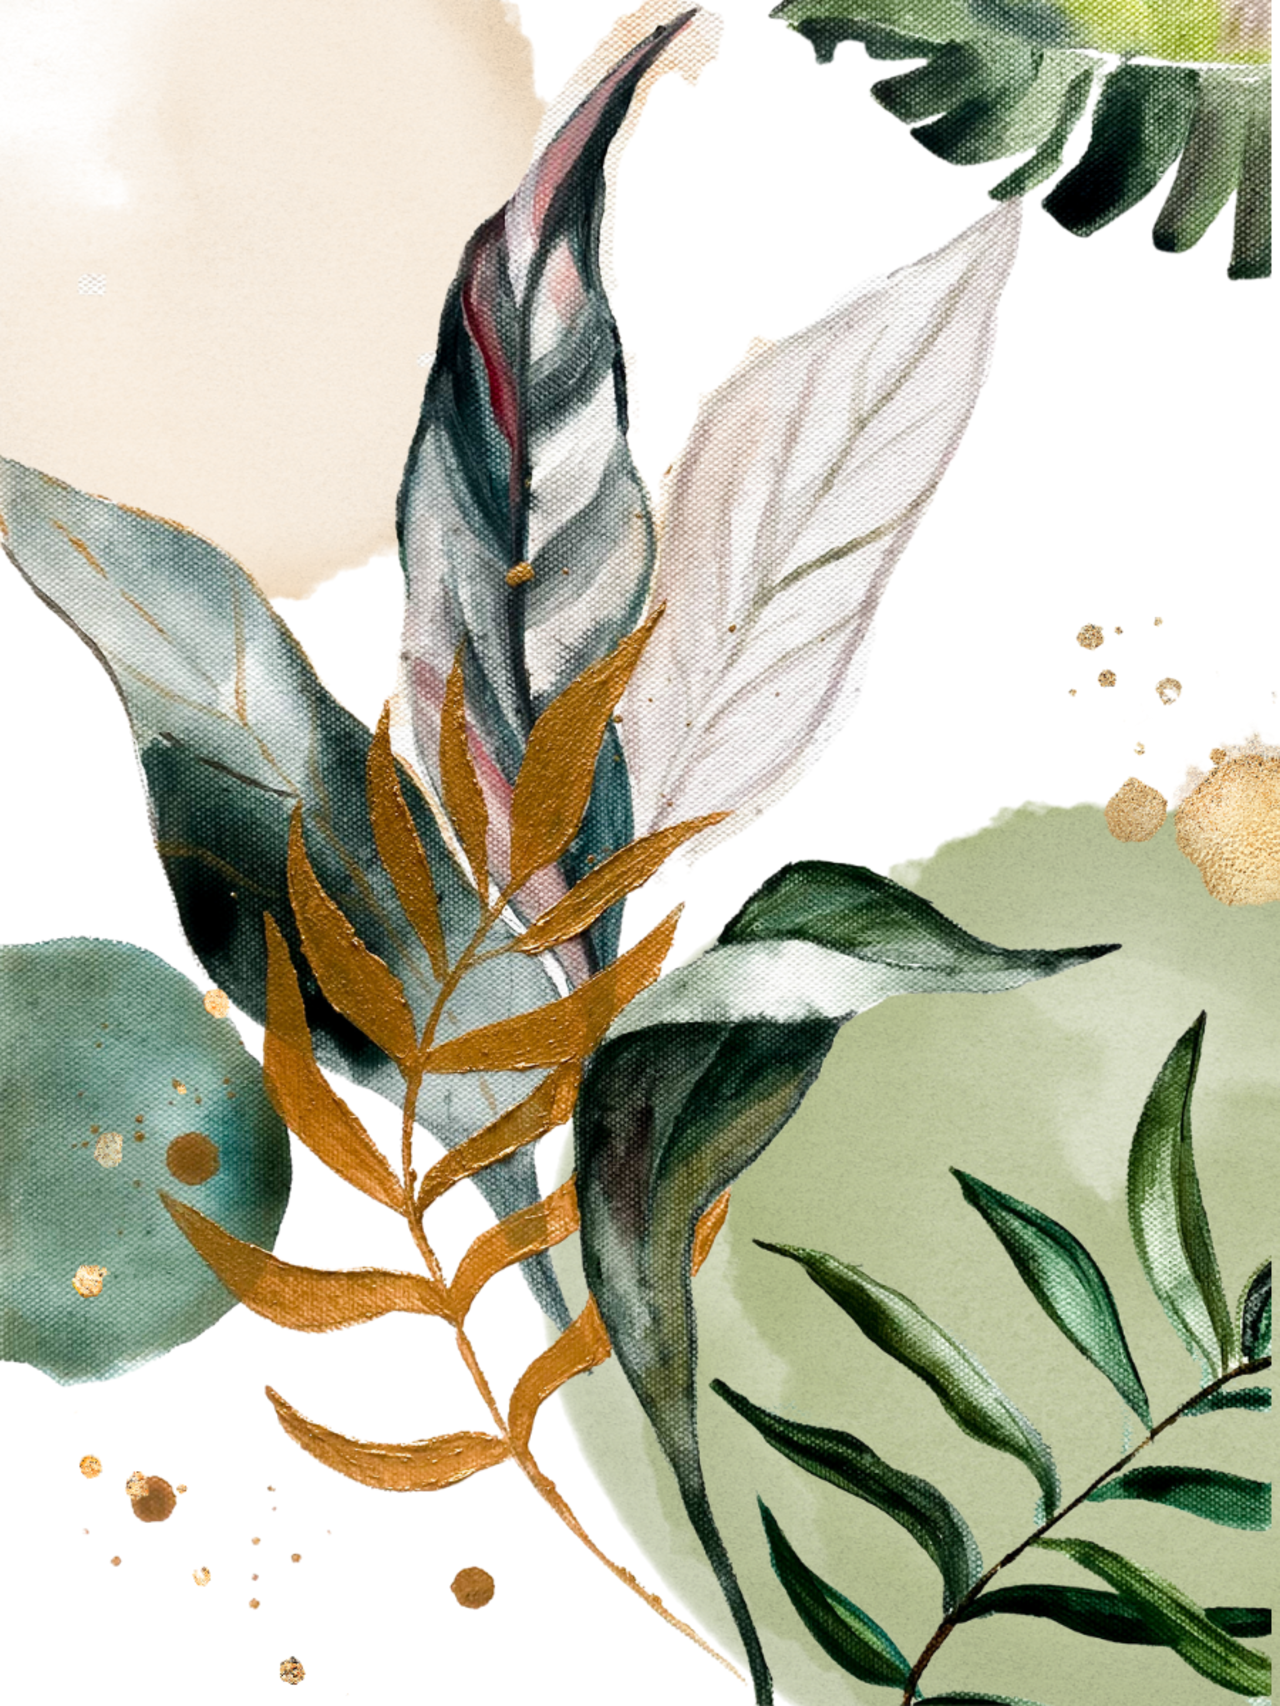 Pflanzenbilder: Blätter malen 